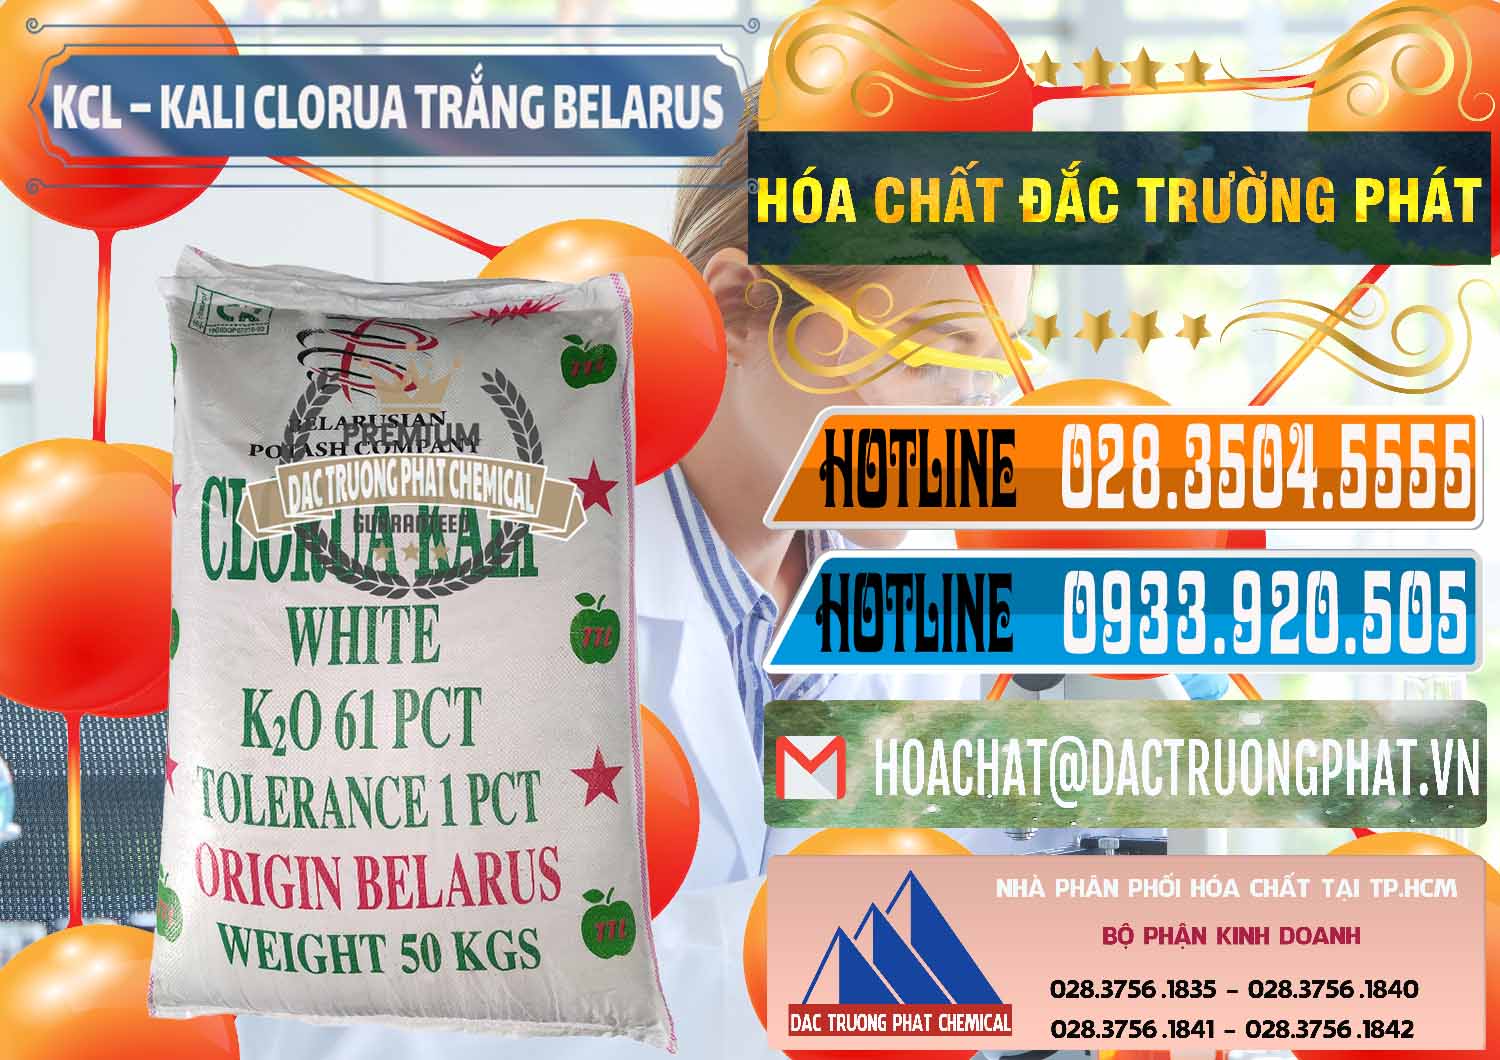 Cty chuyên bán & phân phối KCL – Kali Clorua Trắng Belarus - 0085 - Cty cung cấp & kinh doanh hóa chất tại TP.HCM - stmp.net